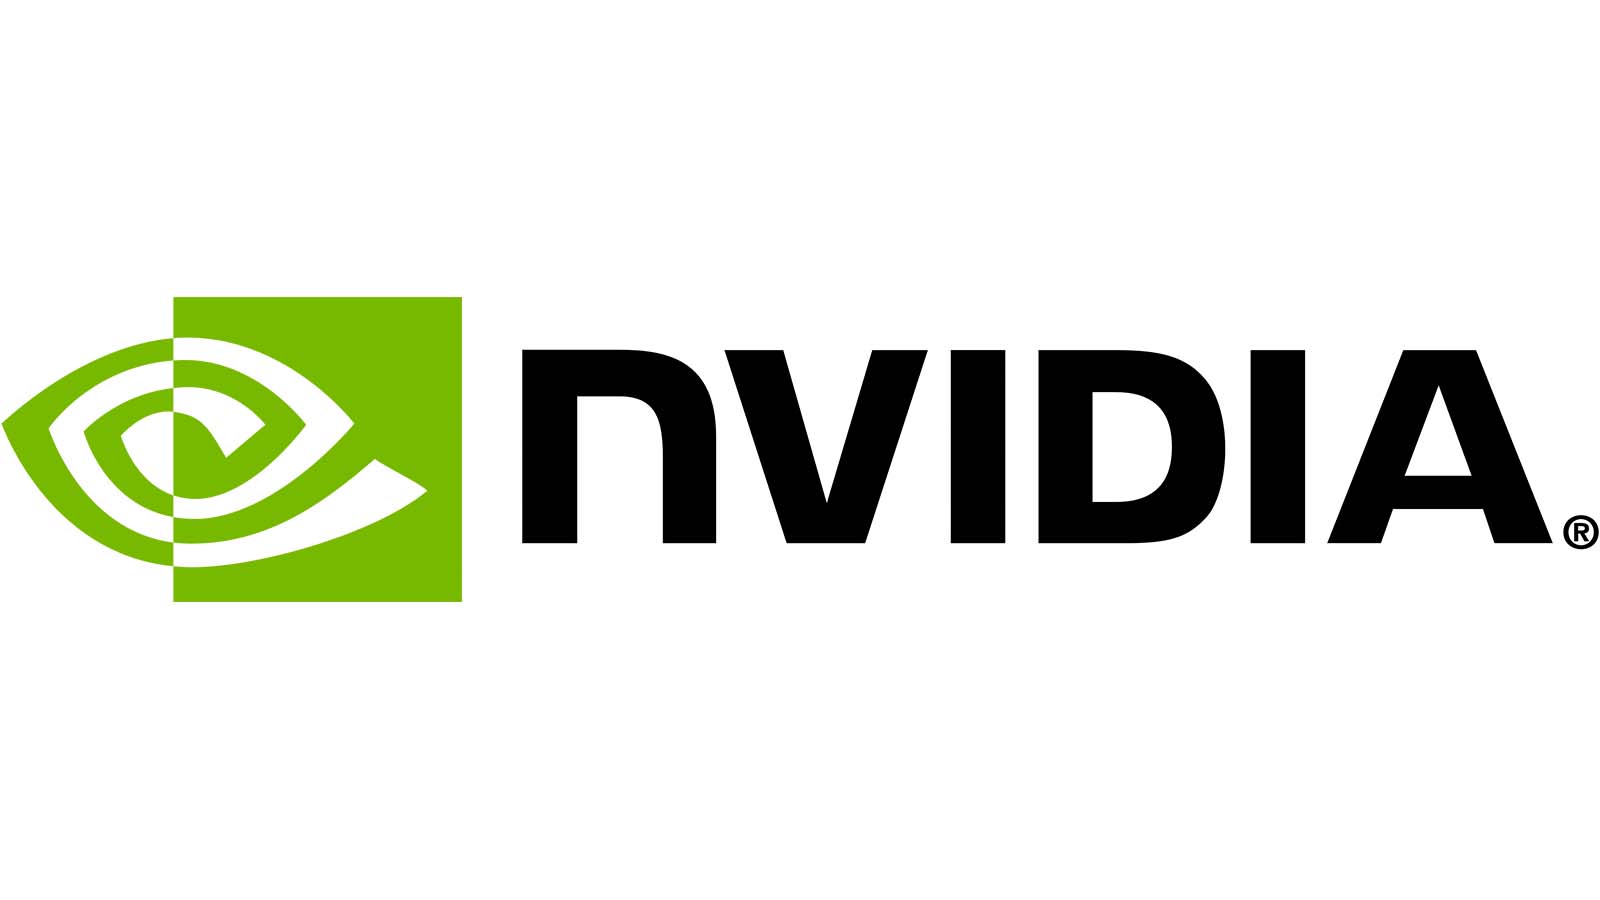 NVIDIAの社名は「nVIDIA」でも「Nvidia」でもなく”NVIDIA”が正しい